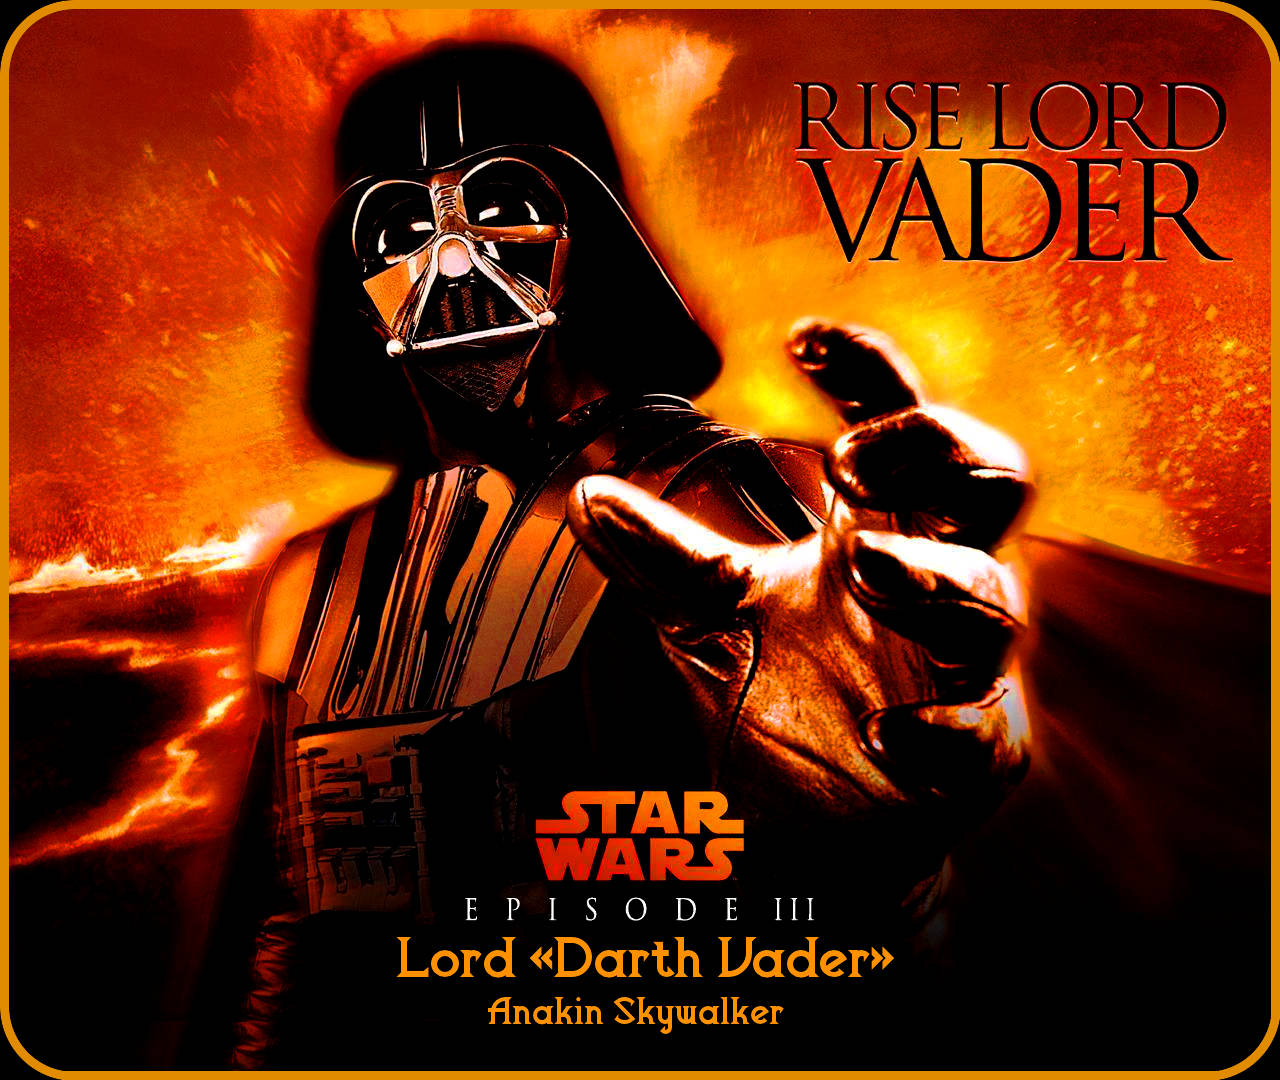 Cool Star Wars Anakin Skywalker Darth Vader Background